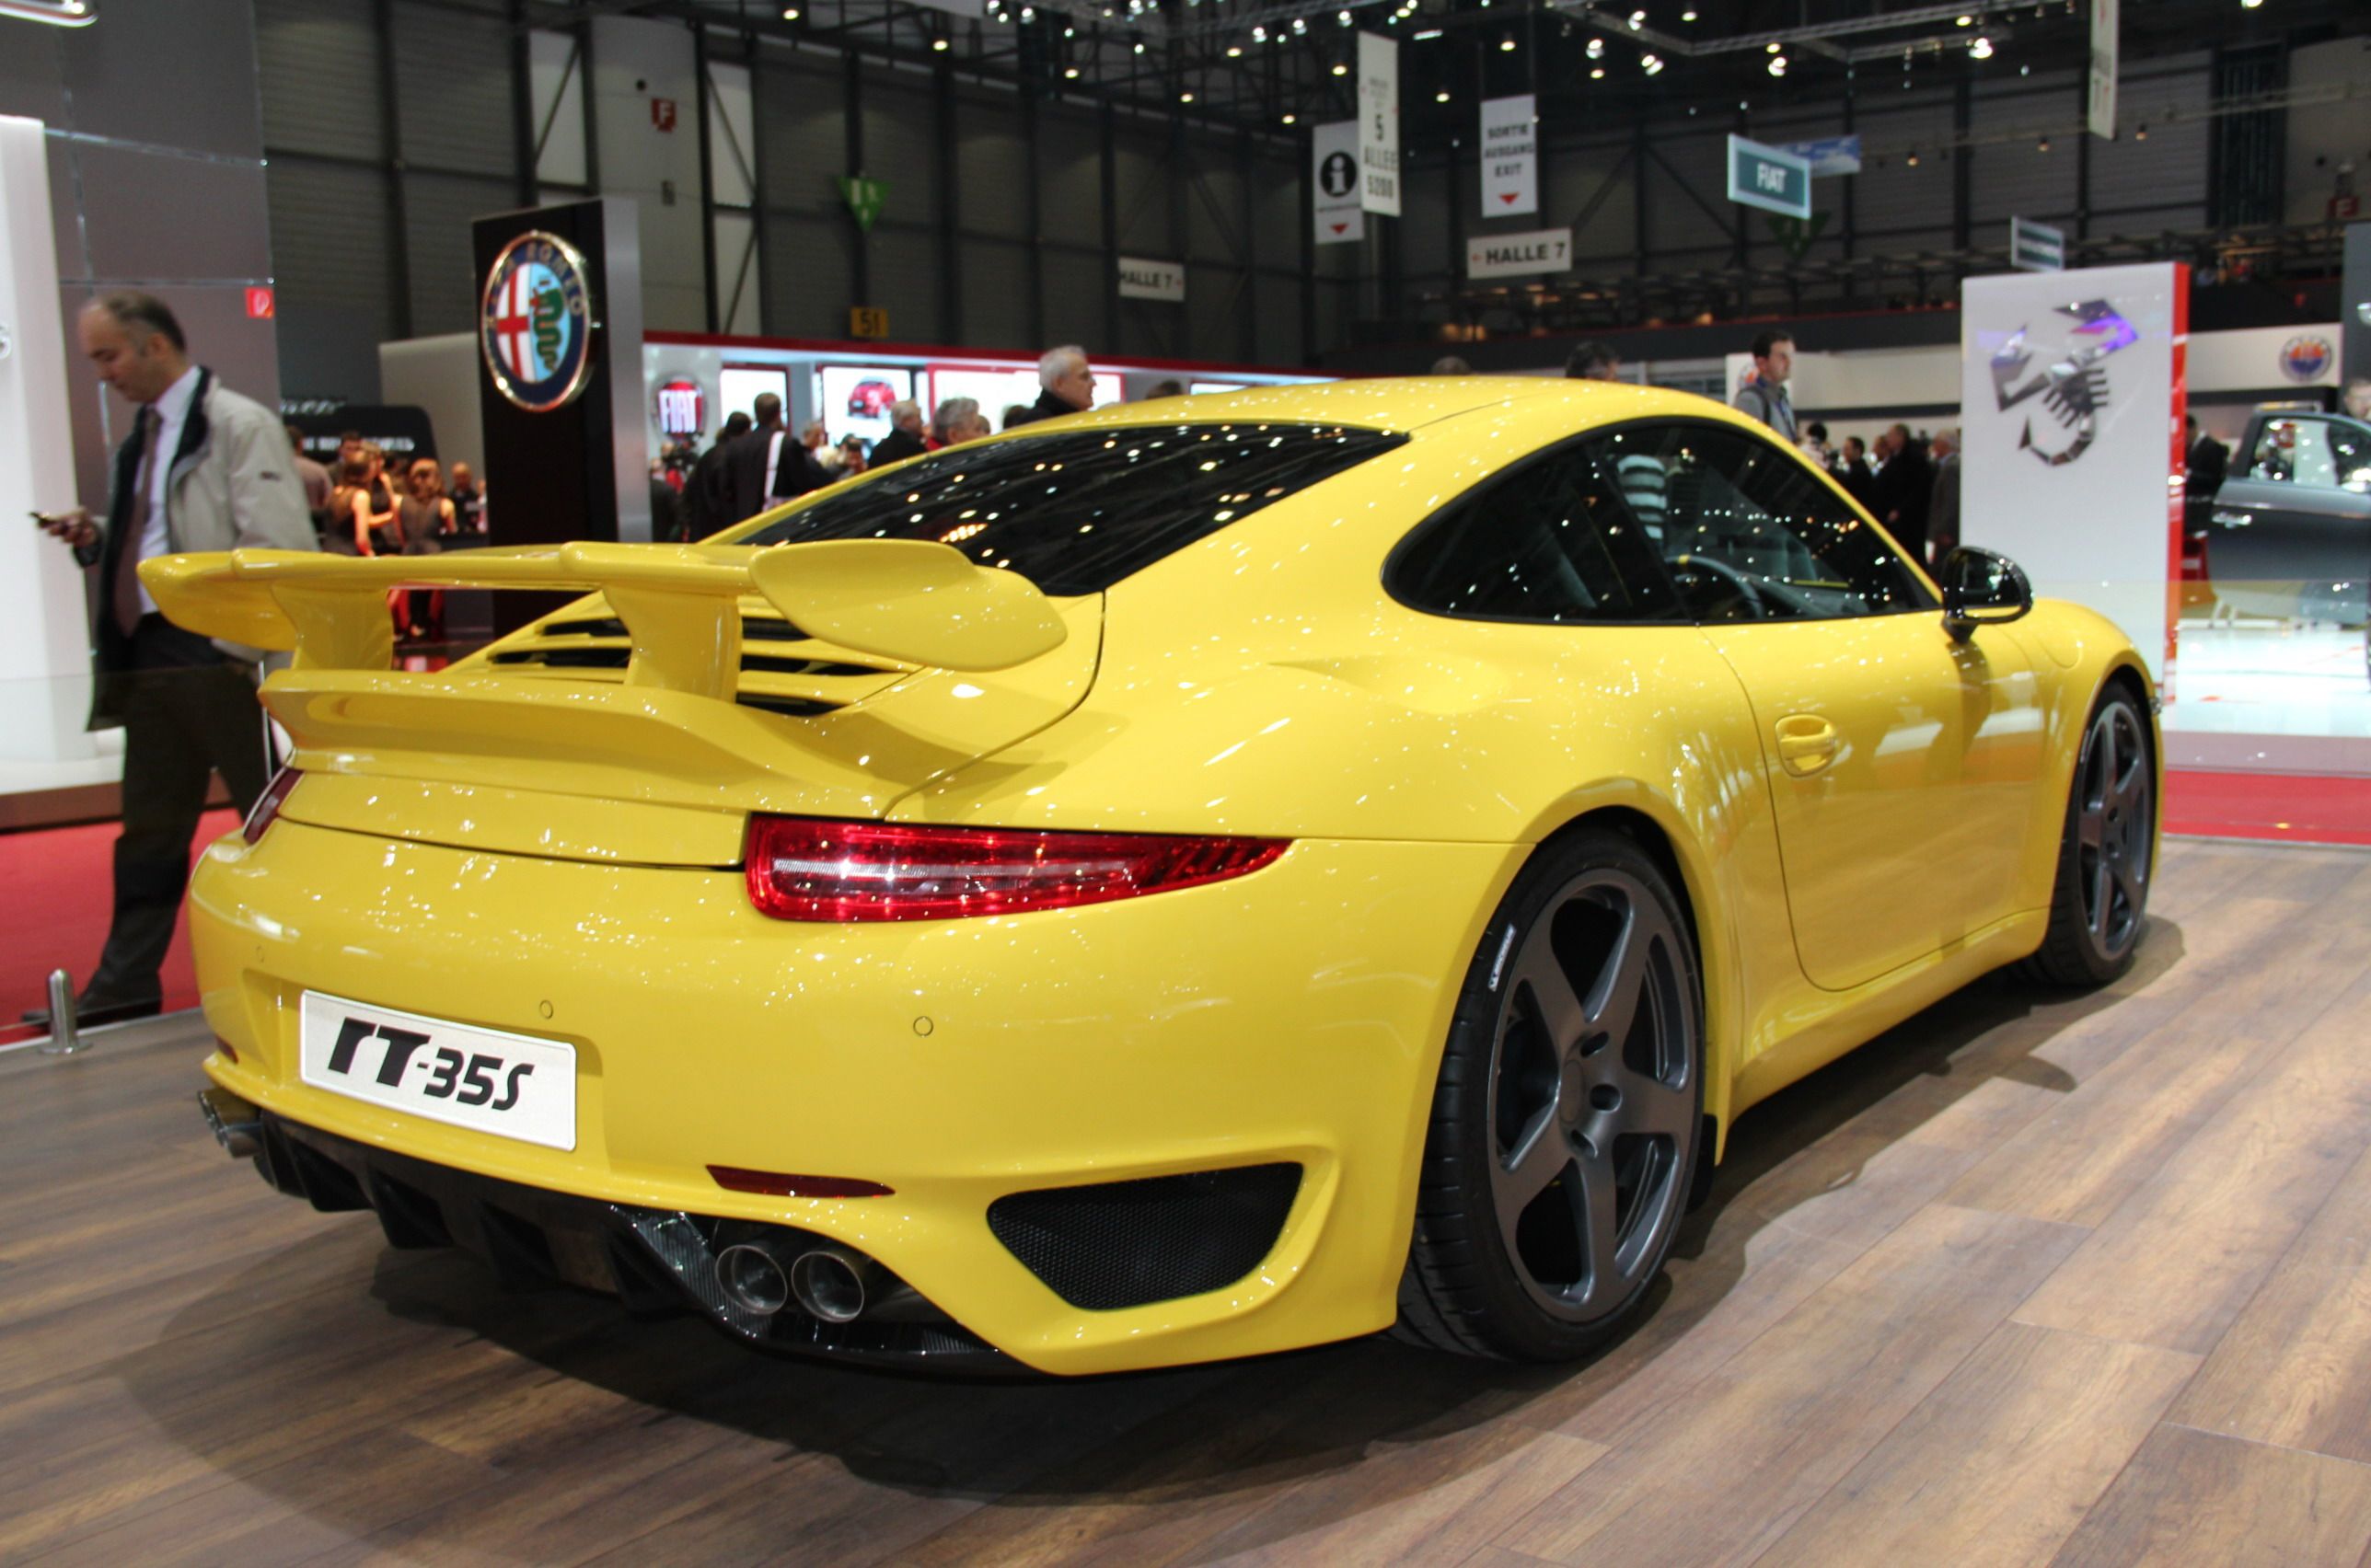 2013 Porsche 911 RT-35s by RUF